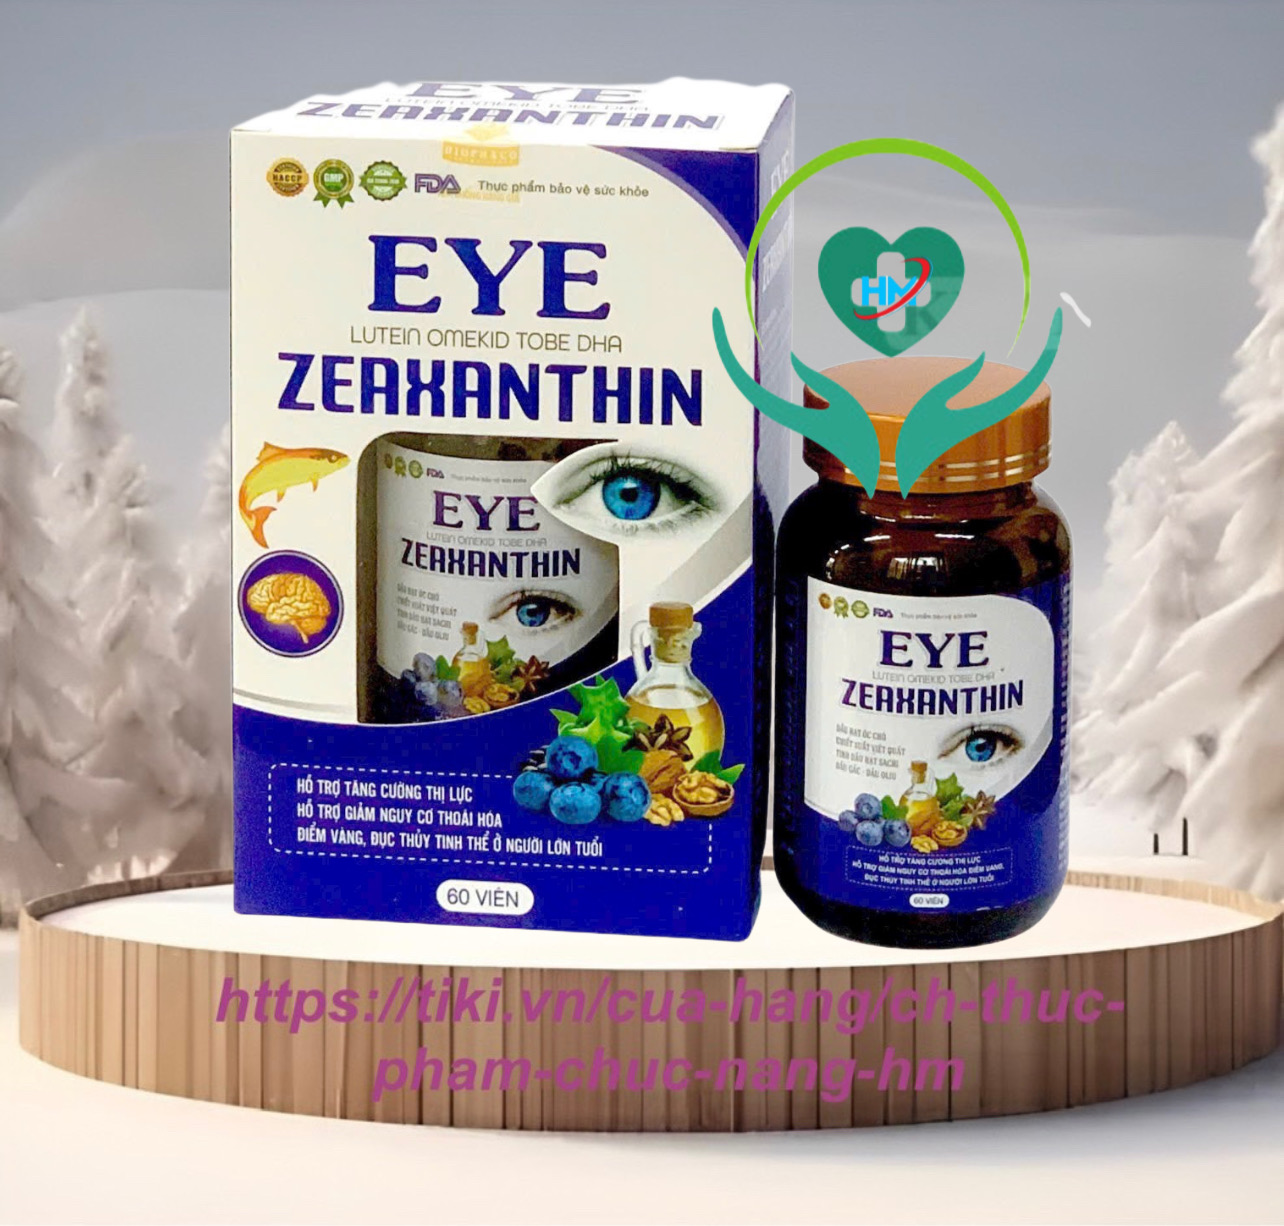 Viên uống bổ mắt EYE ZEAXANTHIN, hộp 60 viên, giúp tăng cường thị lực